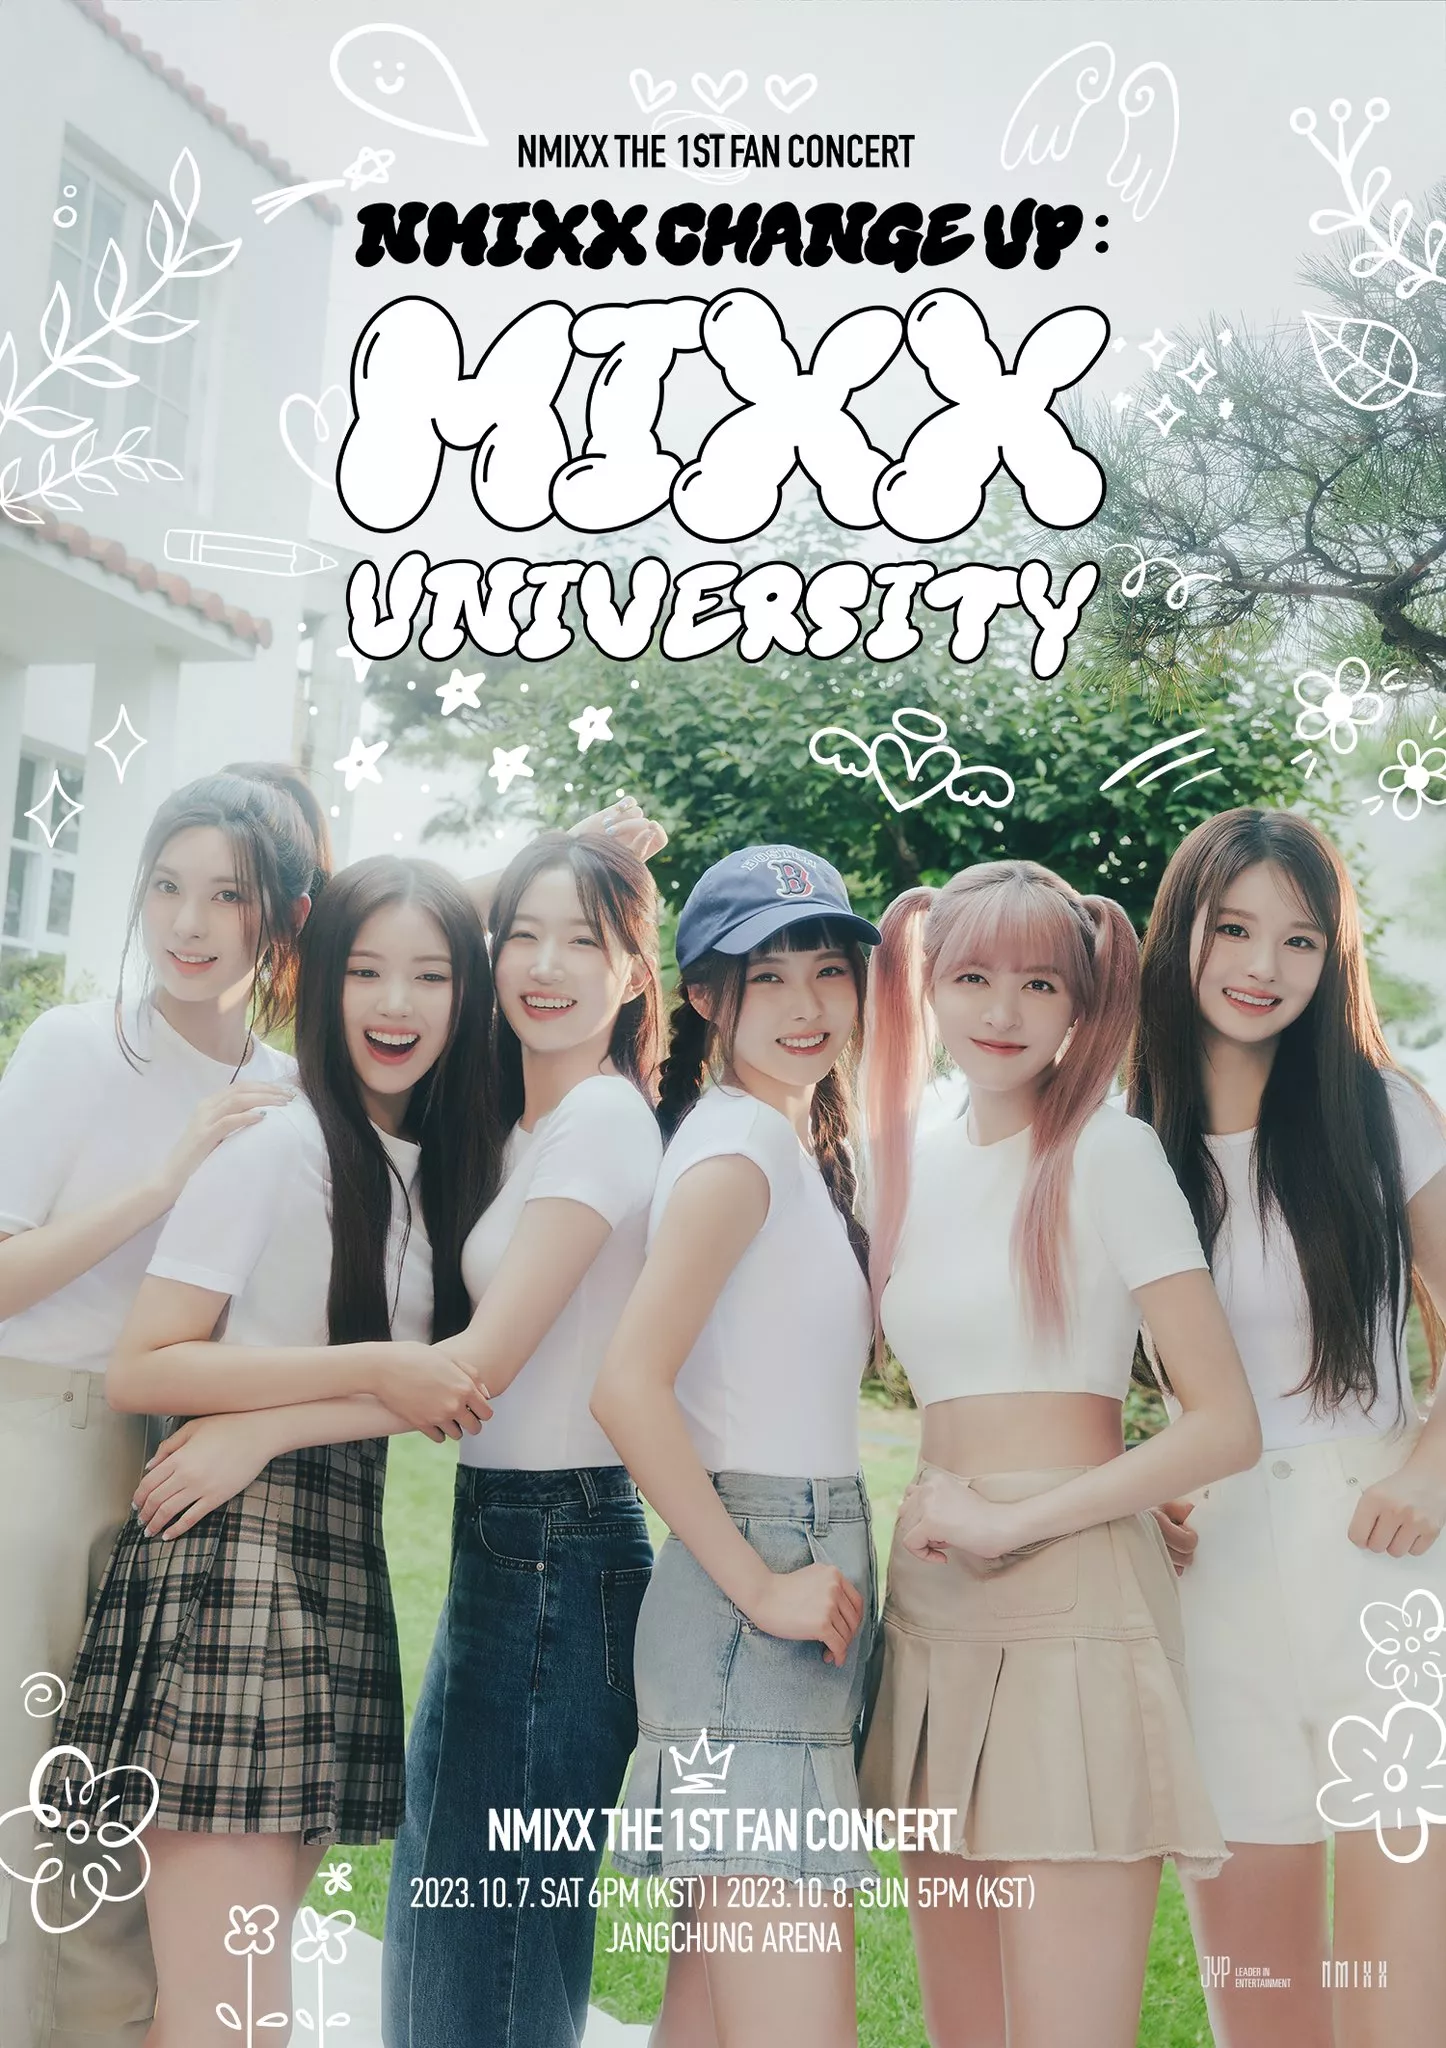 NMIXX объявляют о первом фан-концерте "NMIXX CHANGE UP: MIXX UNIVERSITY"